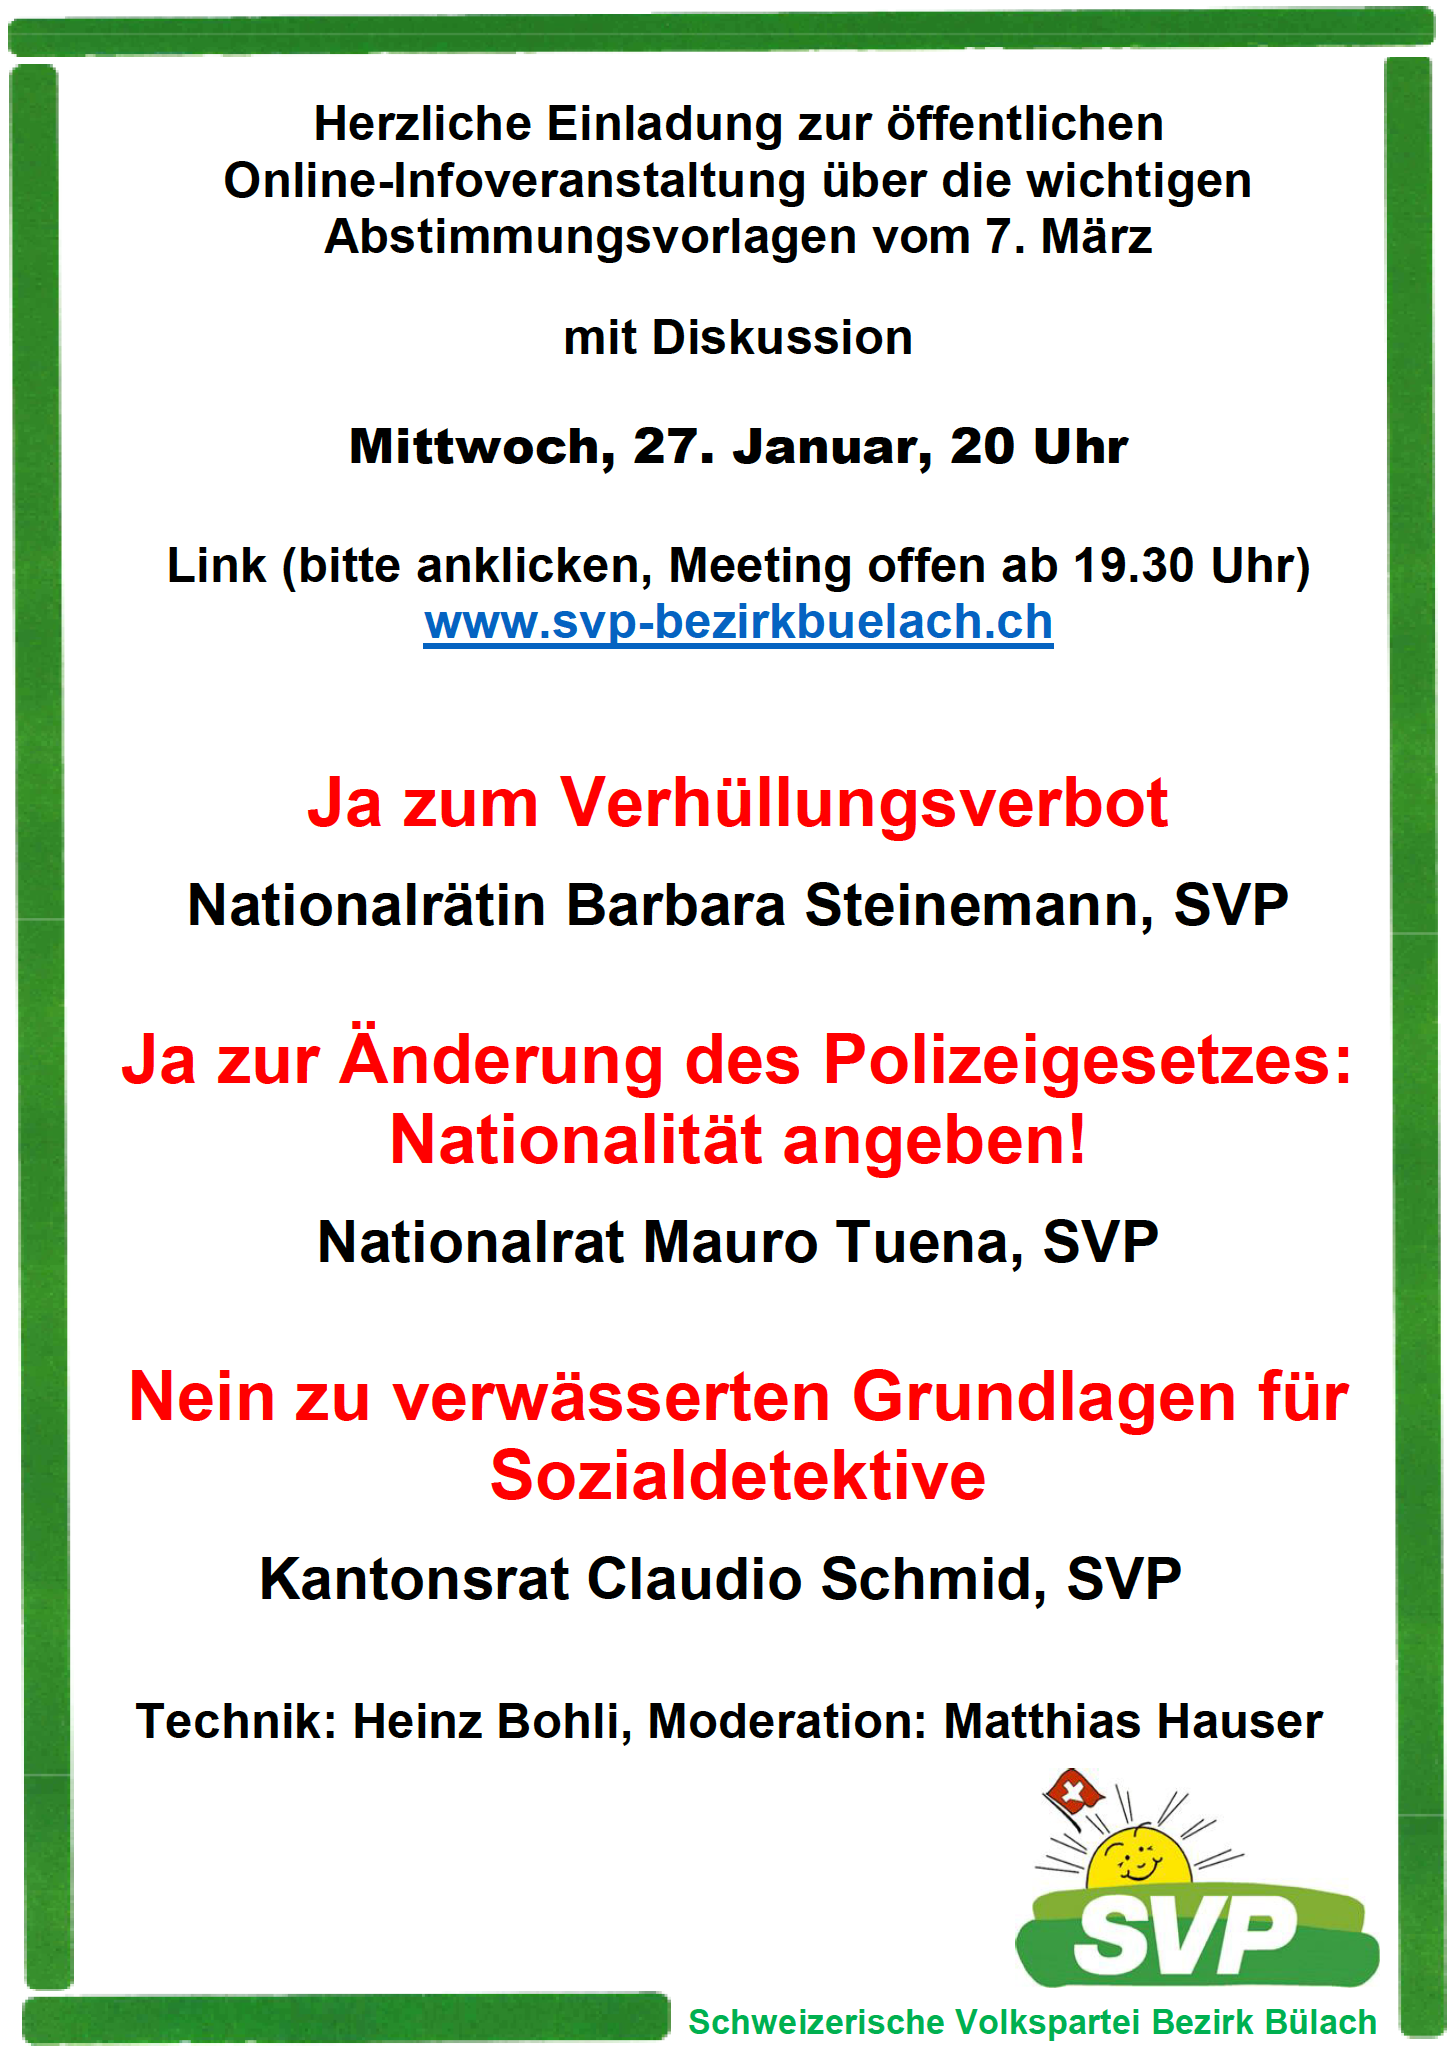 Online-Informations-Veranstaltung der SVP Bezirk Bülach